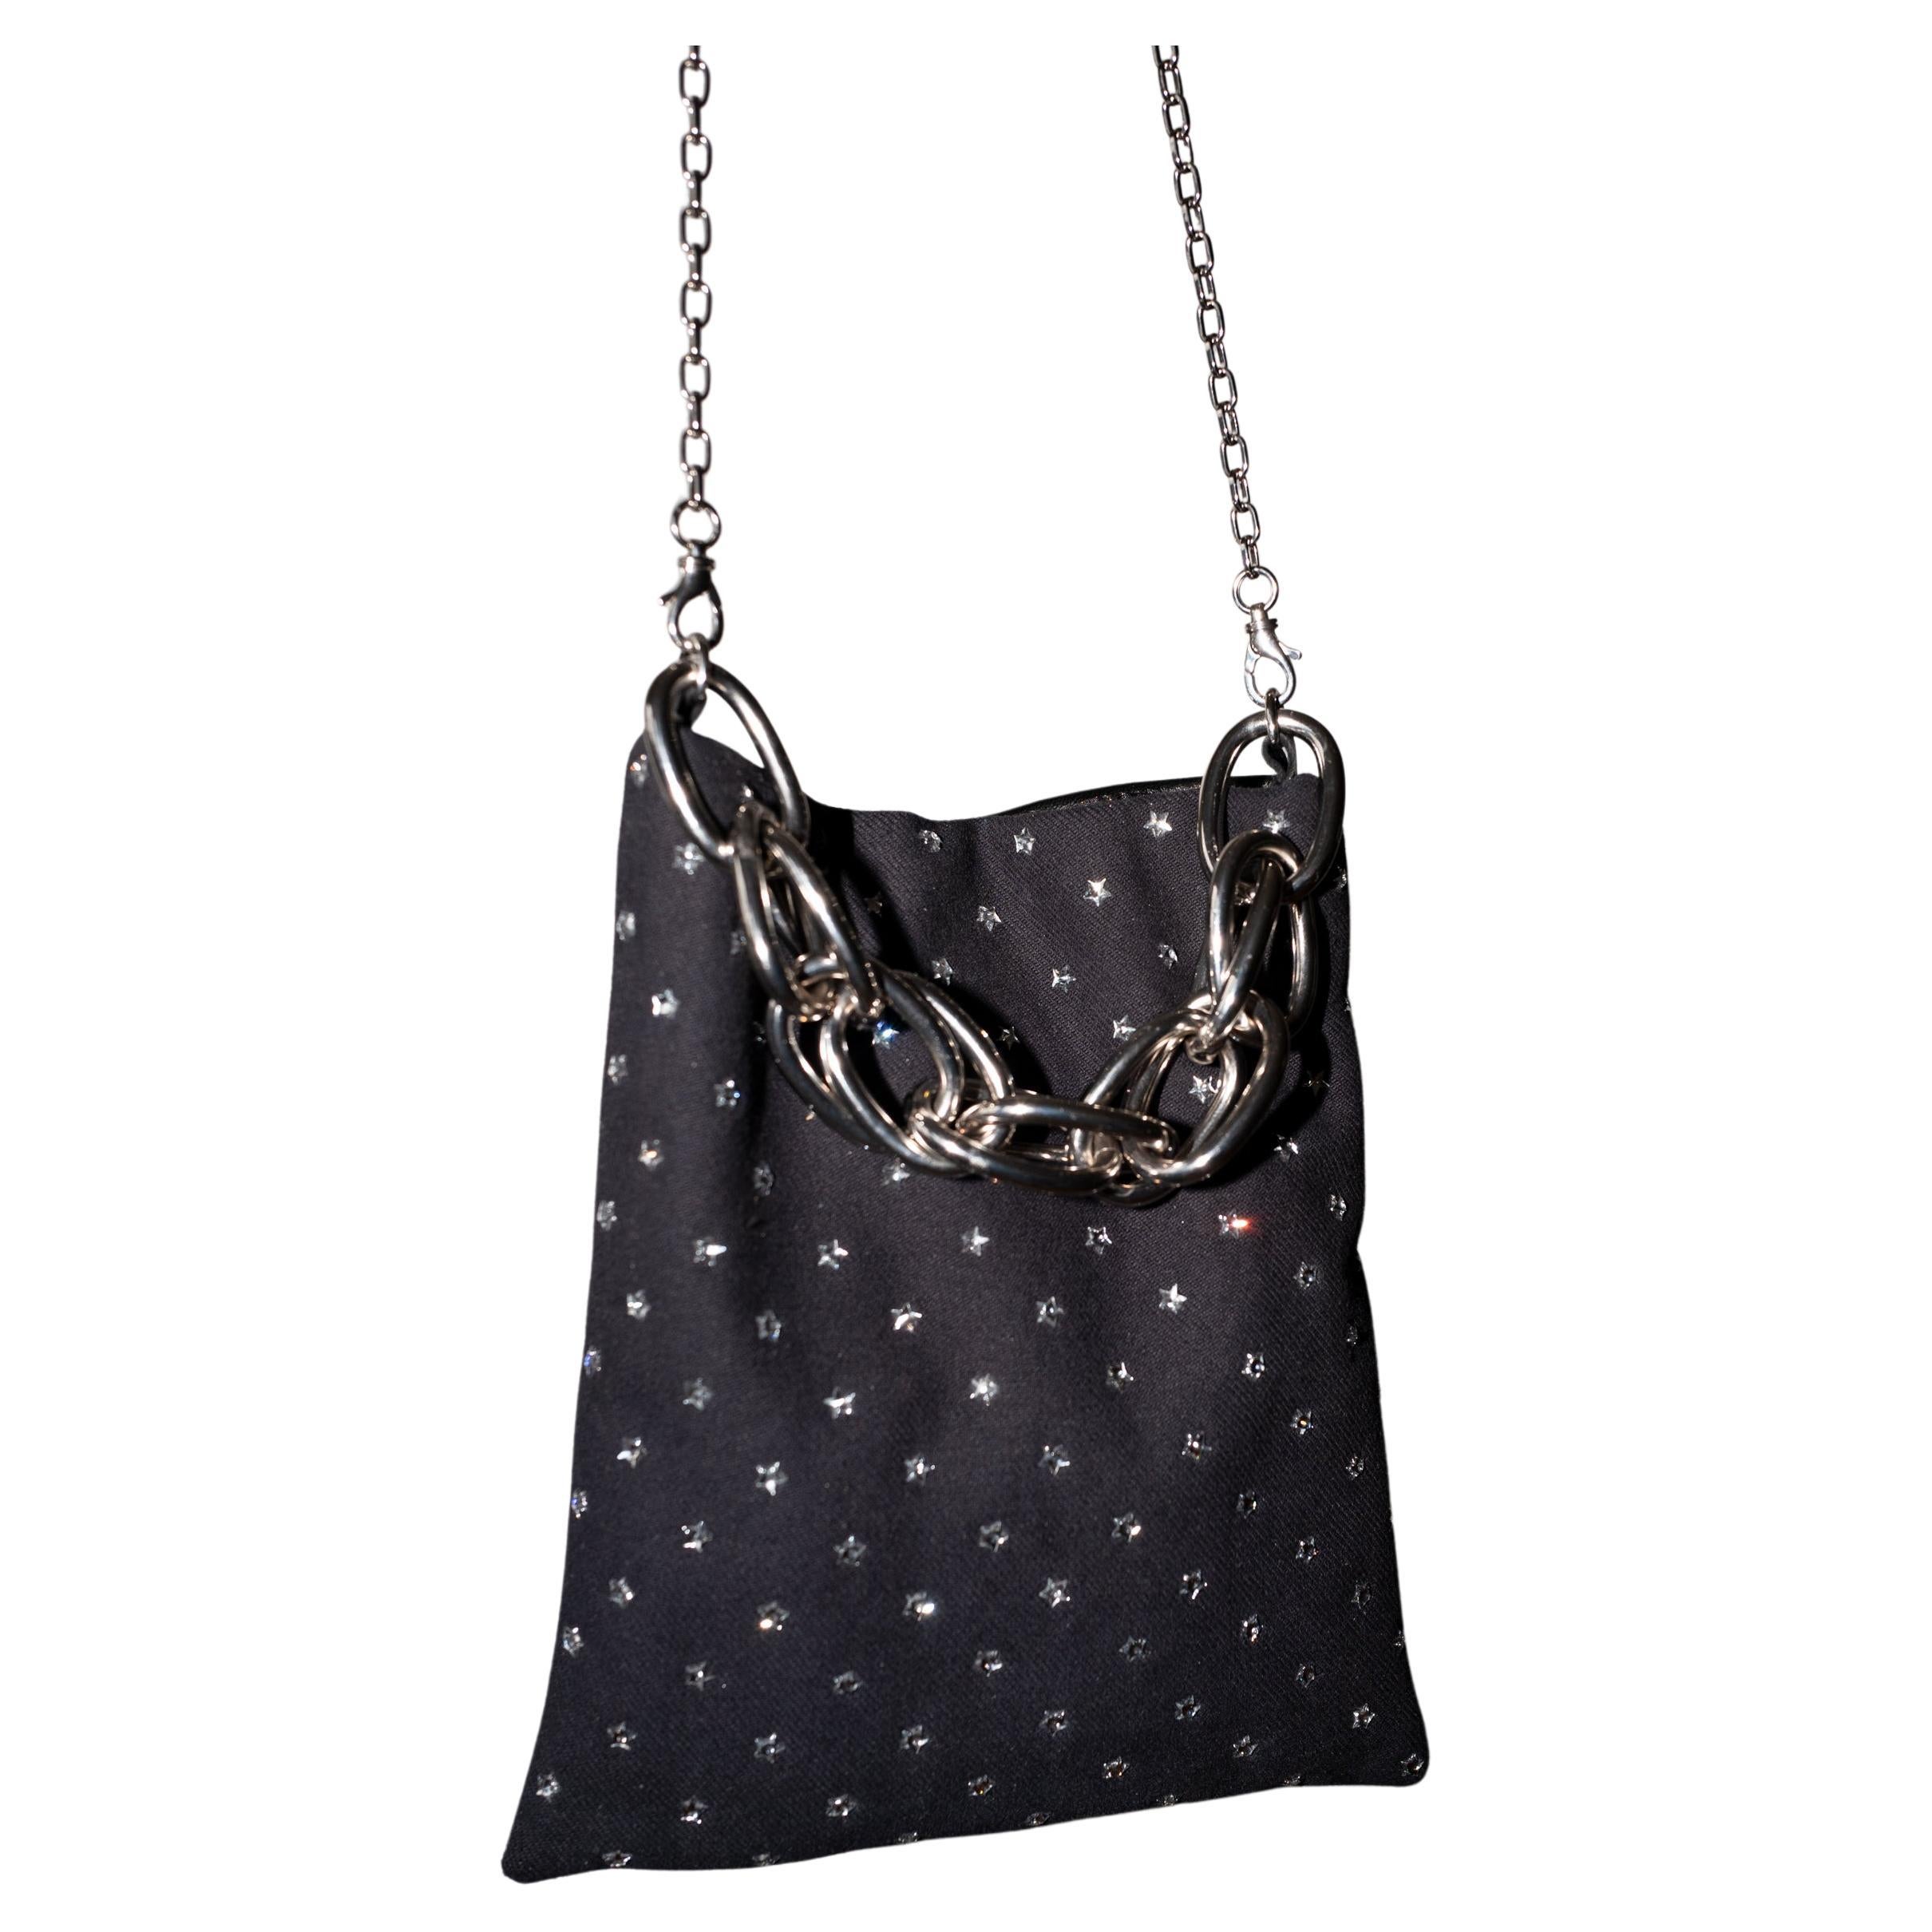 Crystal Star Embellished Black Evening Shoulder Bag Black Leather Chunky Chain